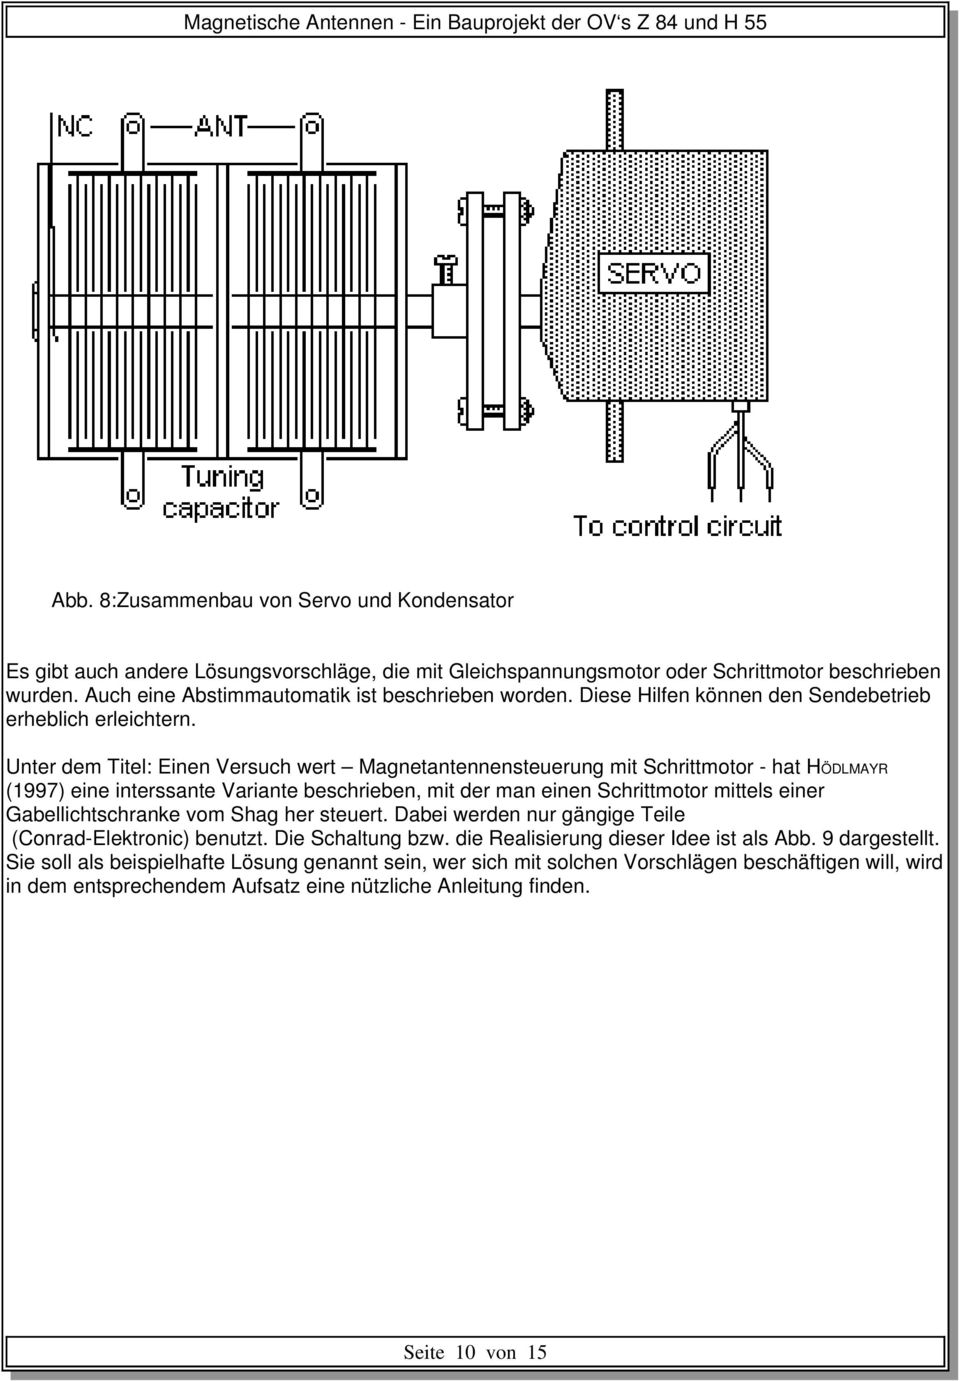 Unter dem Titel: Einen Versuch wert Magnetantennensteuerung mit Schrittmotor - hat HÖDLMAYR (1997) eine interssante Variante beschrieben, mit der man einen Schrittmotor mittels einer